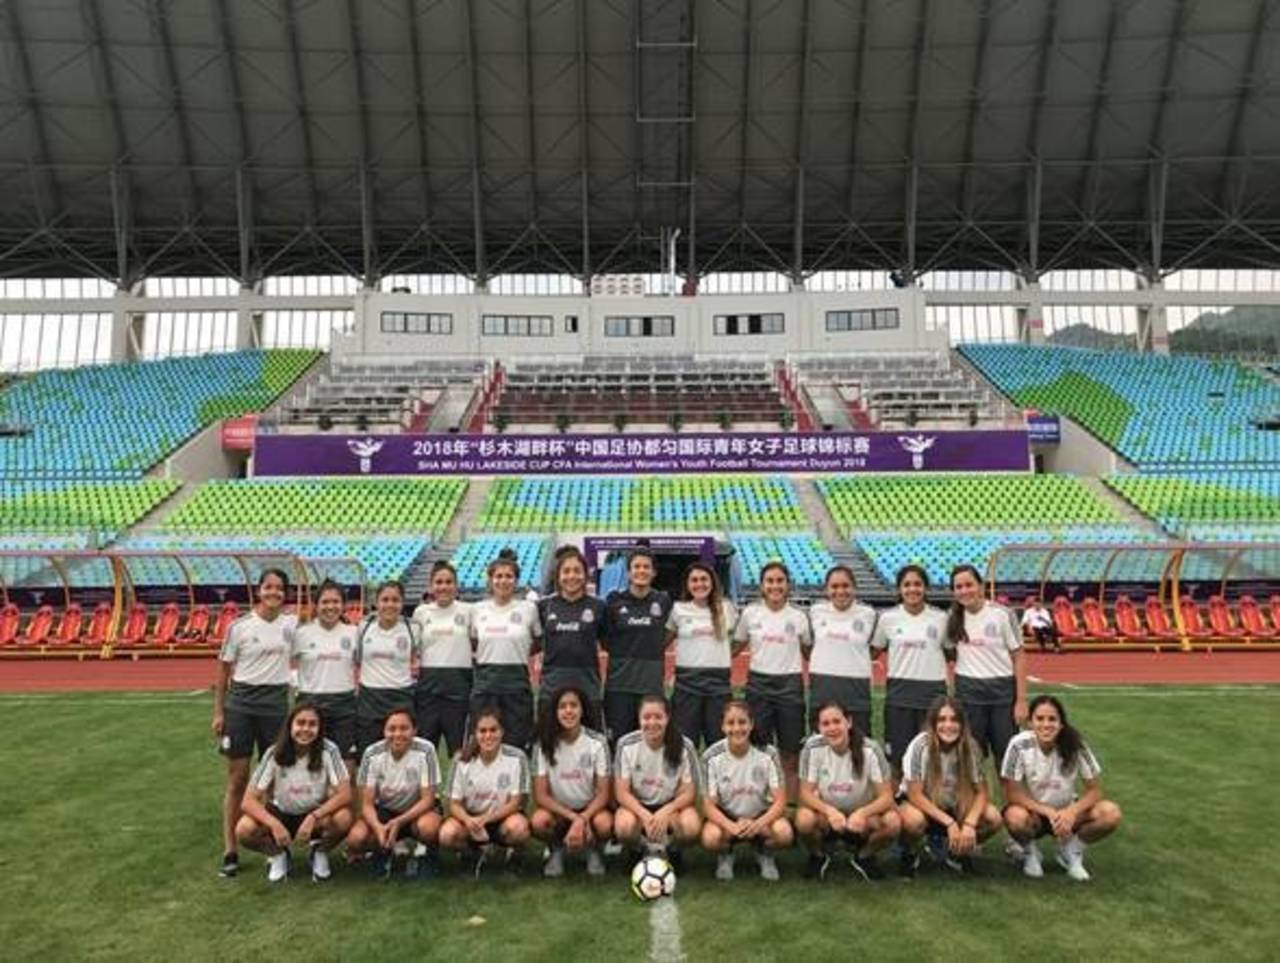 La selección mexicana de futbol femenil en categoría Sub 20, trabaja en territorio asiático antes de partir a la justa mundialista. (Especial)